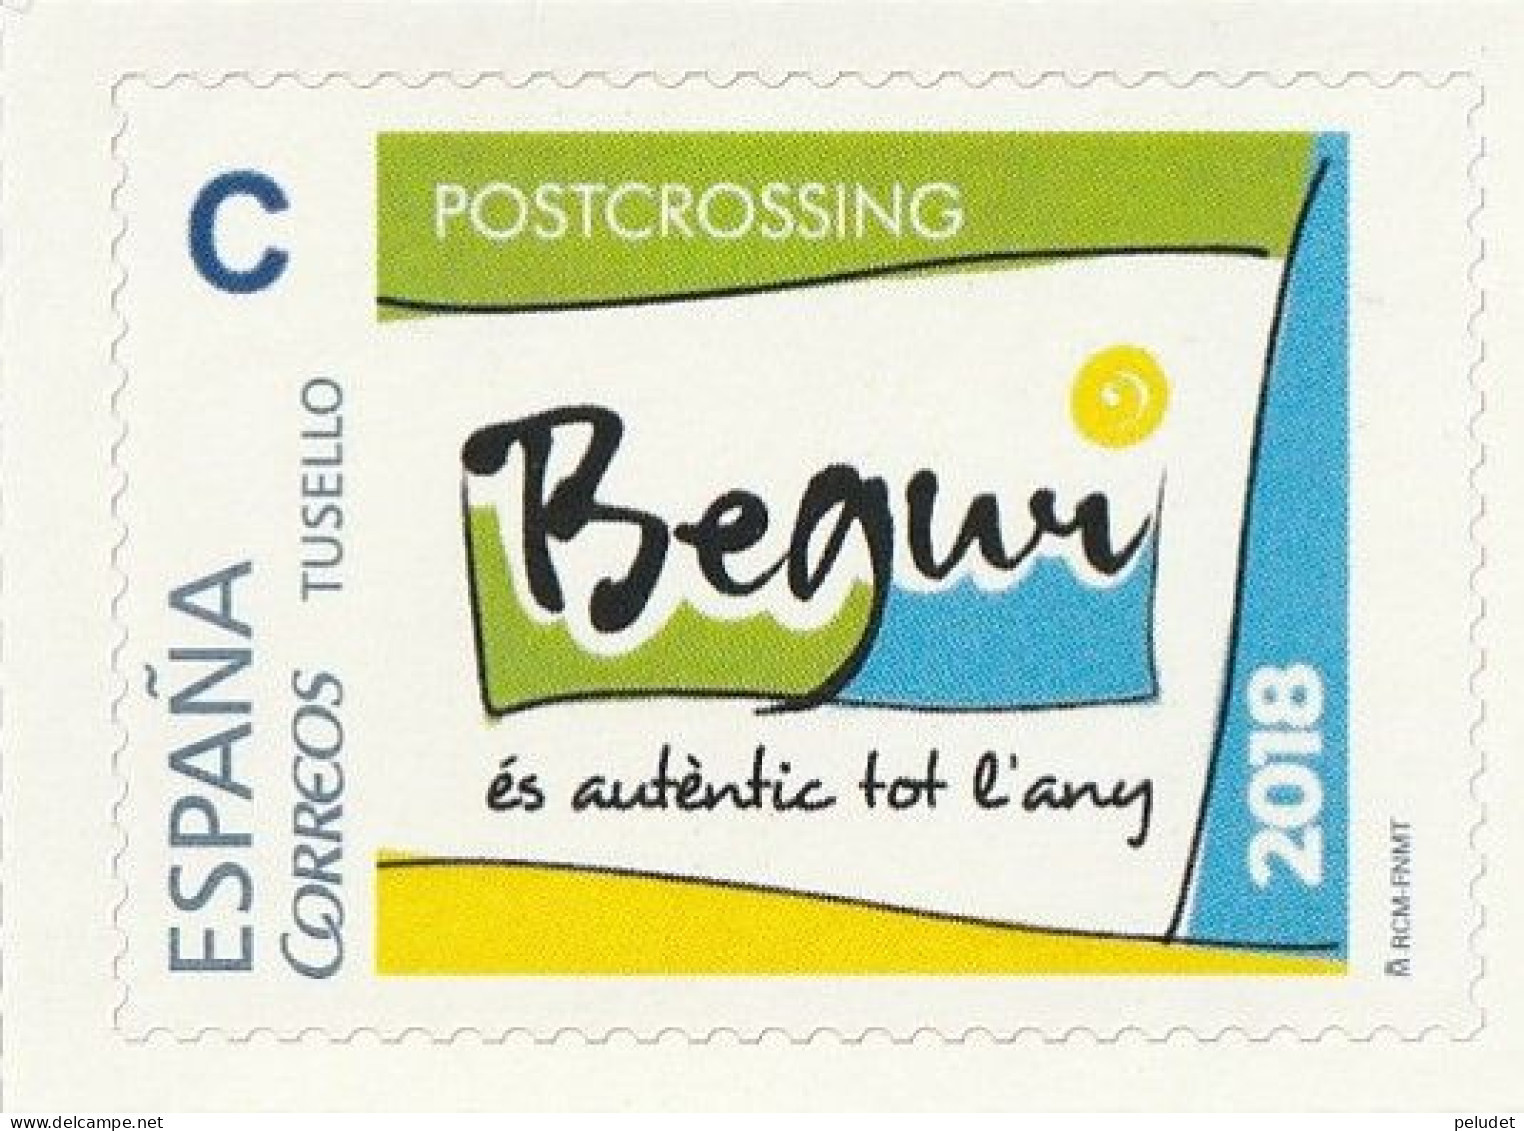 Spain Espagne - 2018 - TuSello - Postcrossing - Begur (personalized Stamp) - Varietà E Curiosità